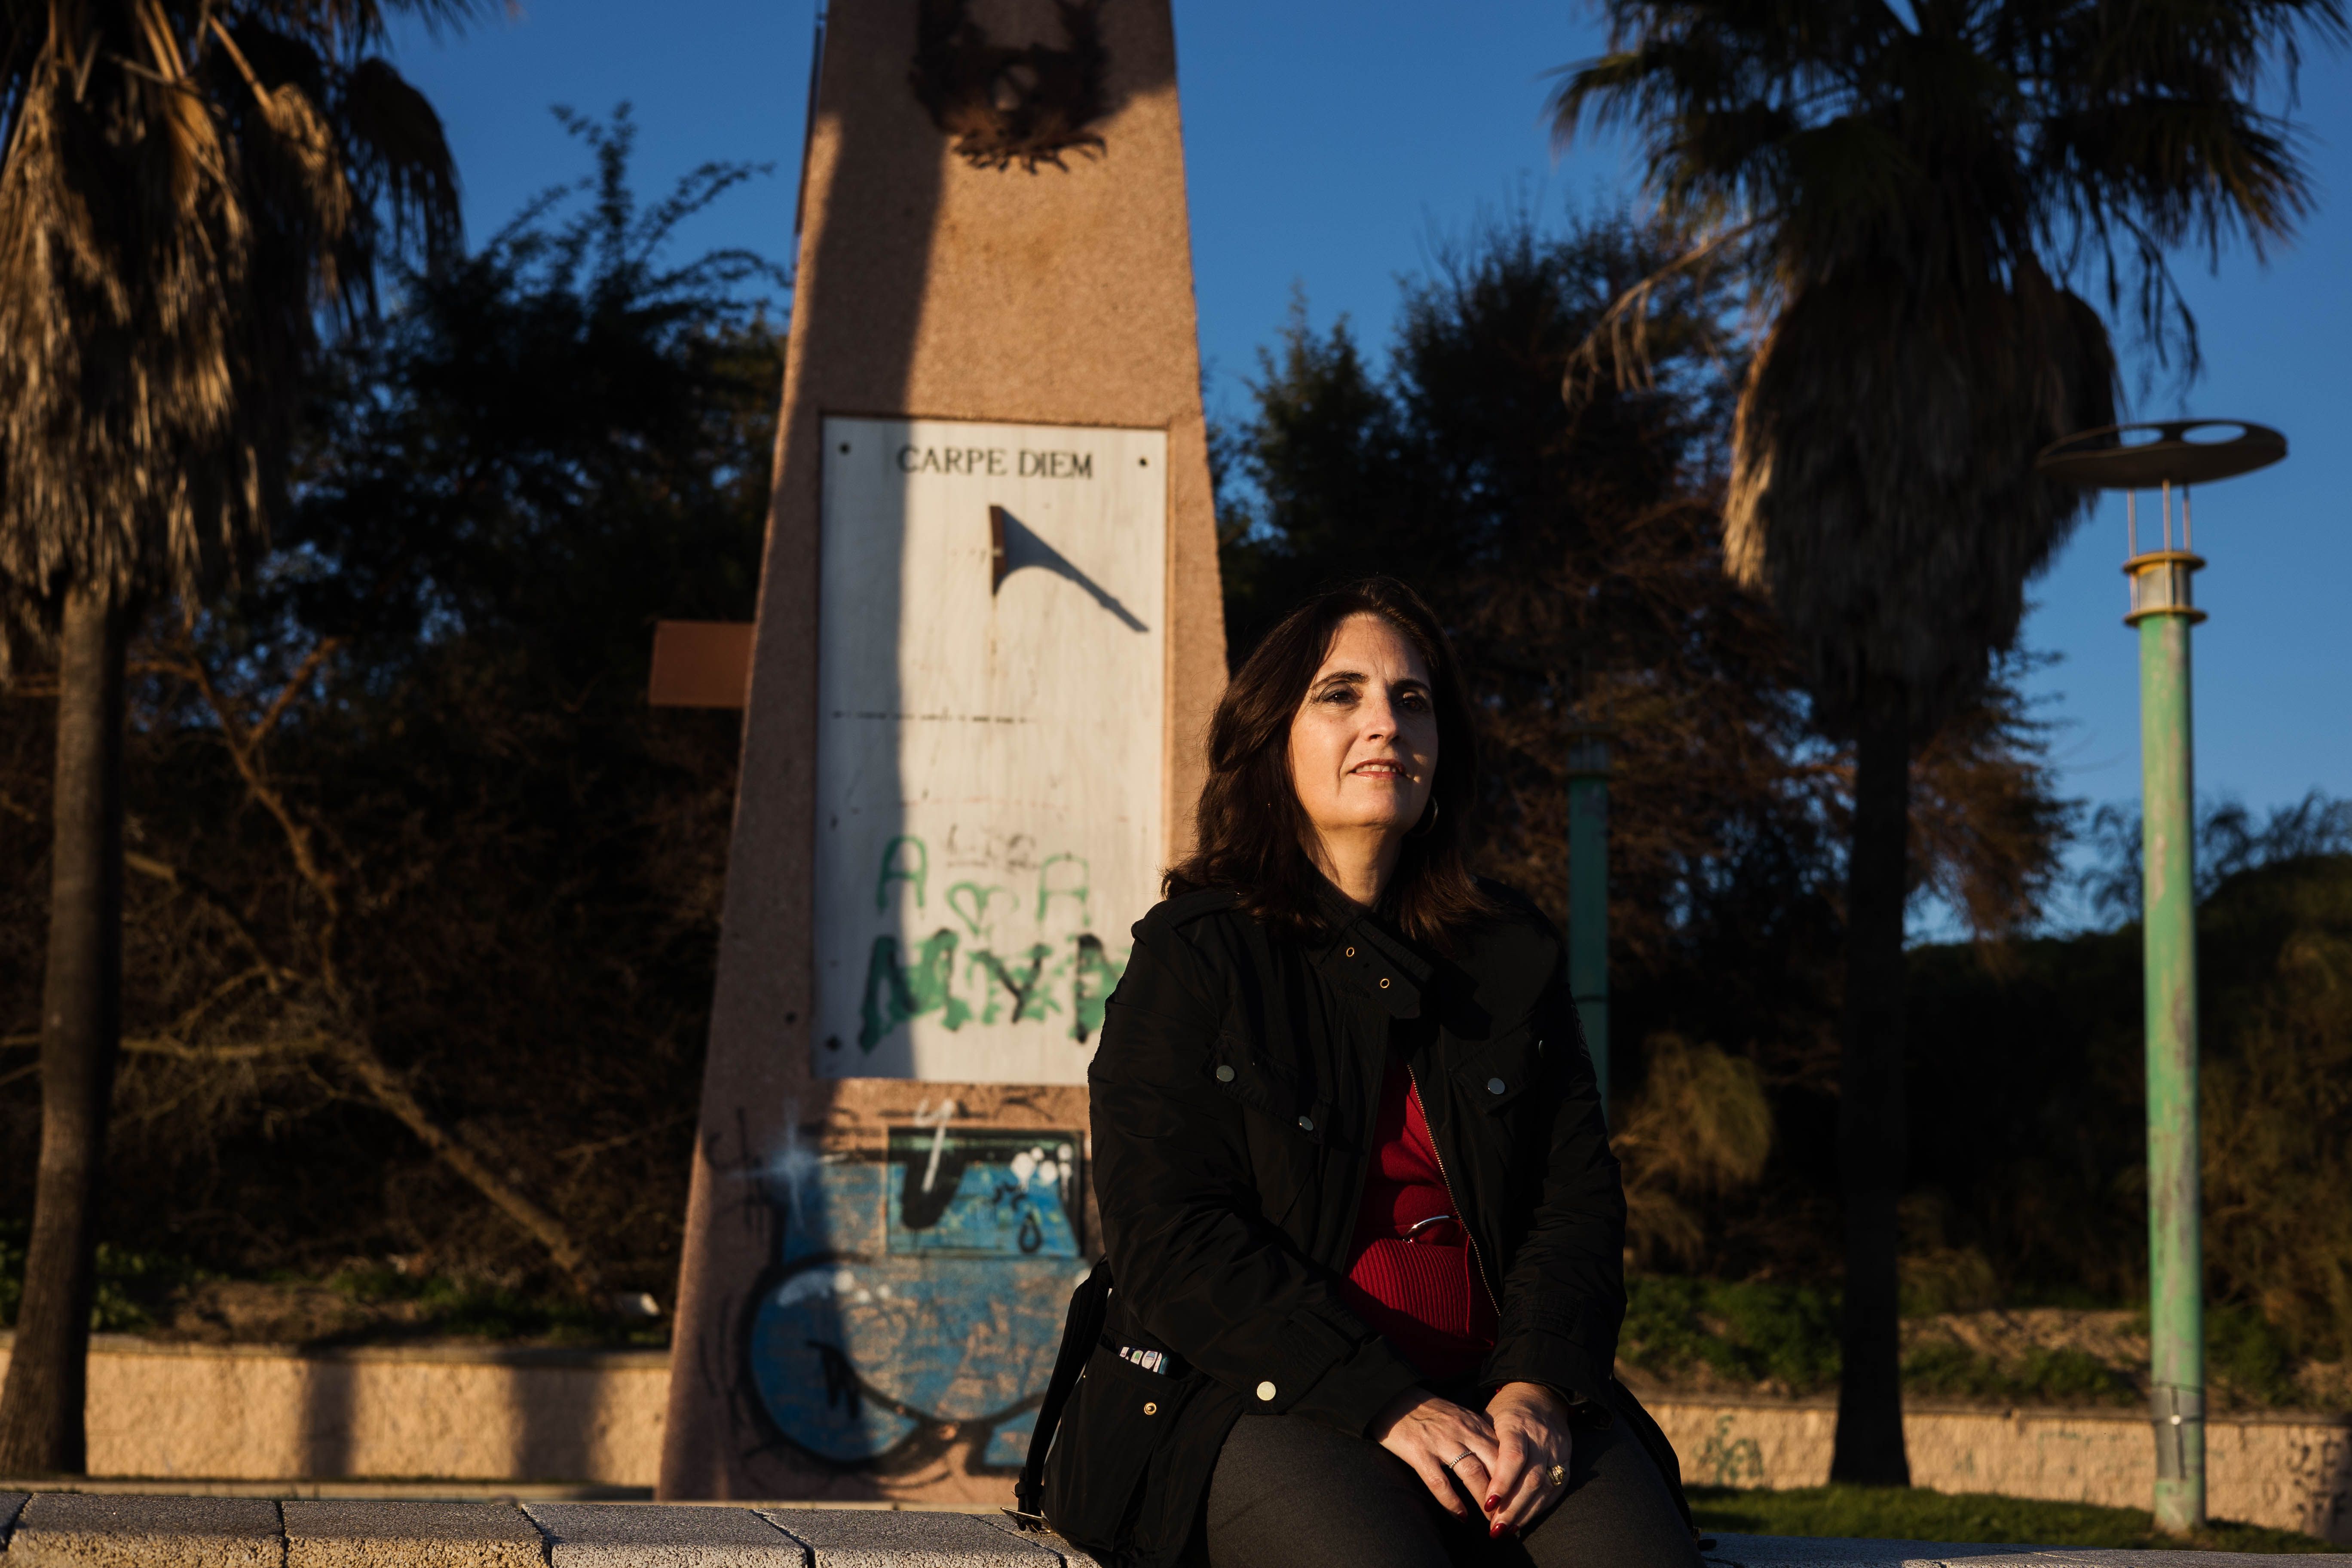 La granadina Isabel Suárez delante de los relojes solares vandalizados en La Puntilla, en El Puerto.